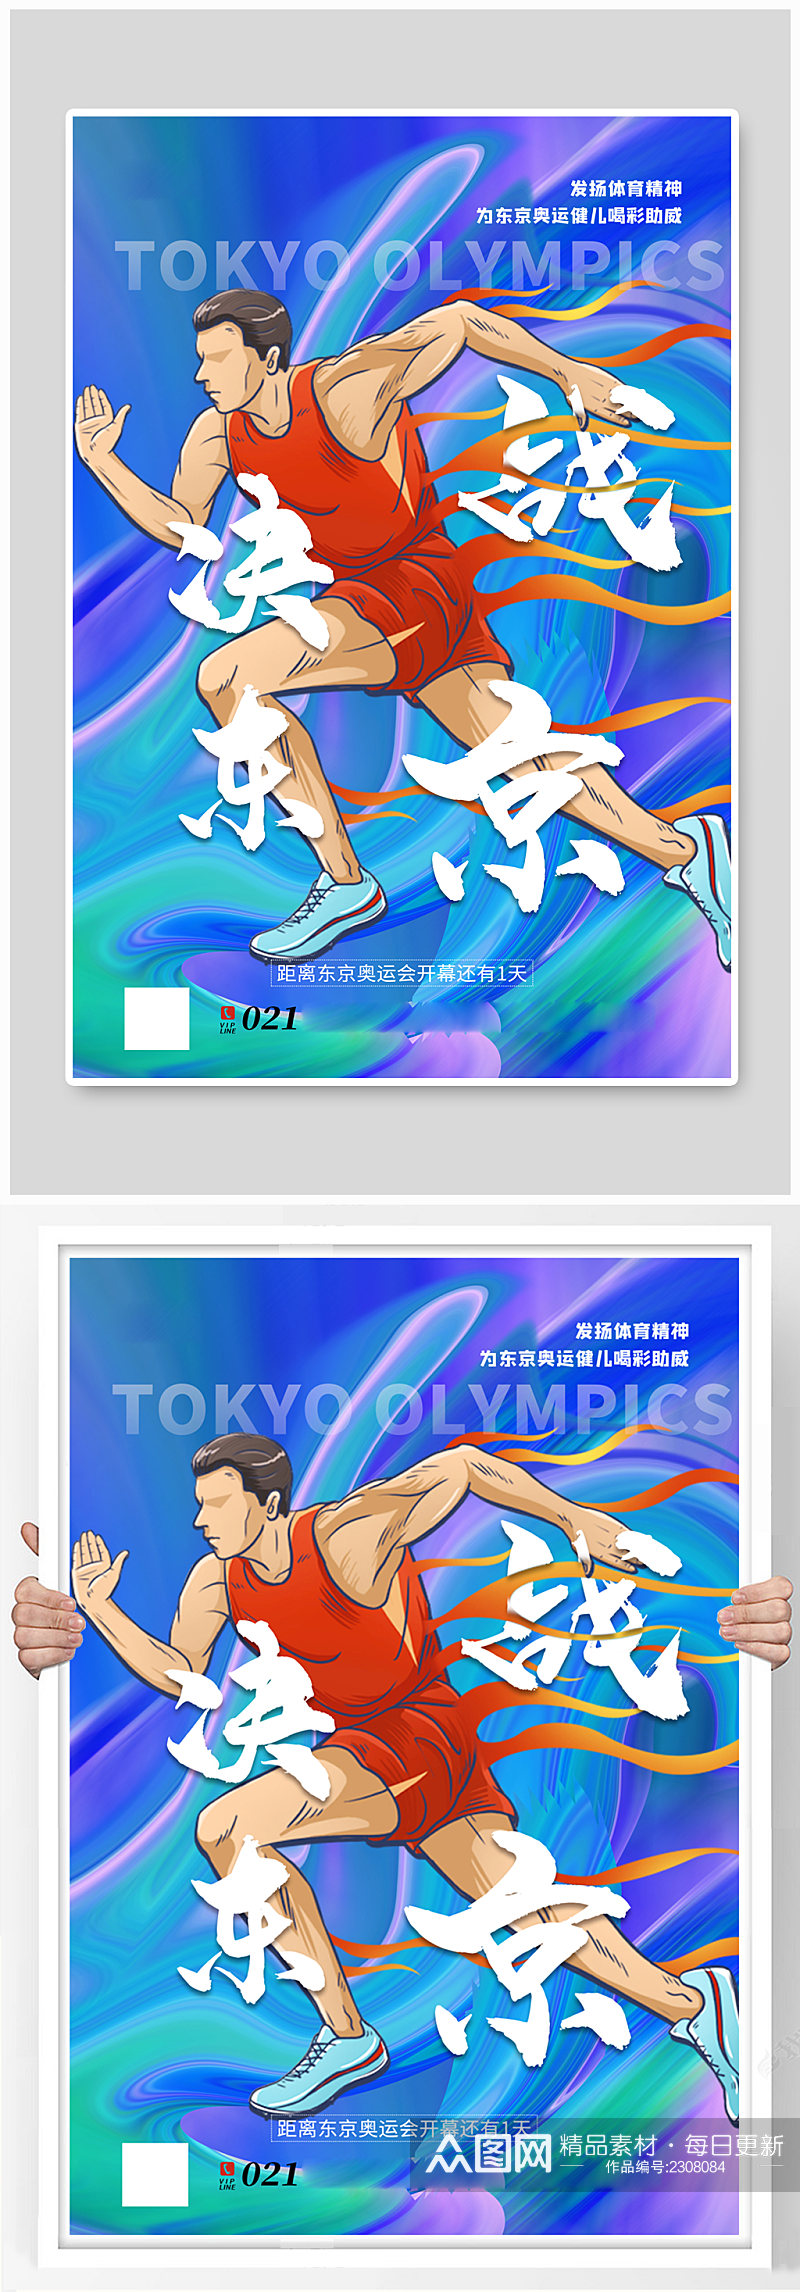 动感酸性风决战东京东京奥运会海报素材